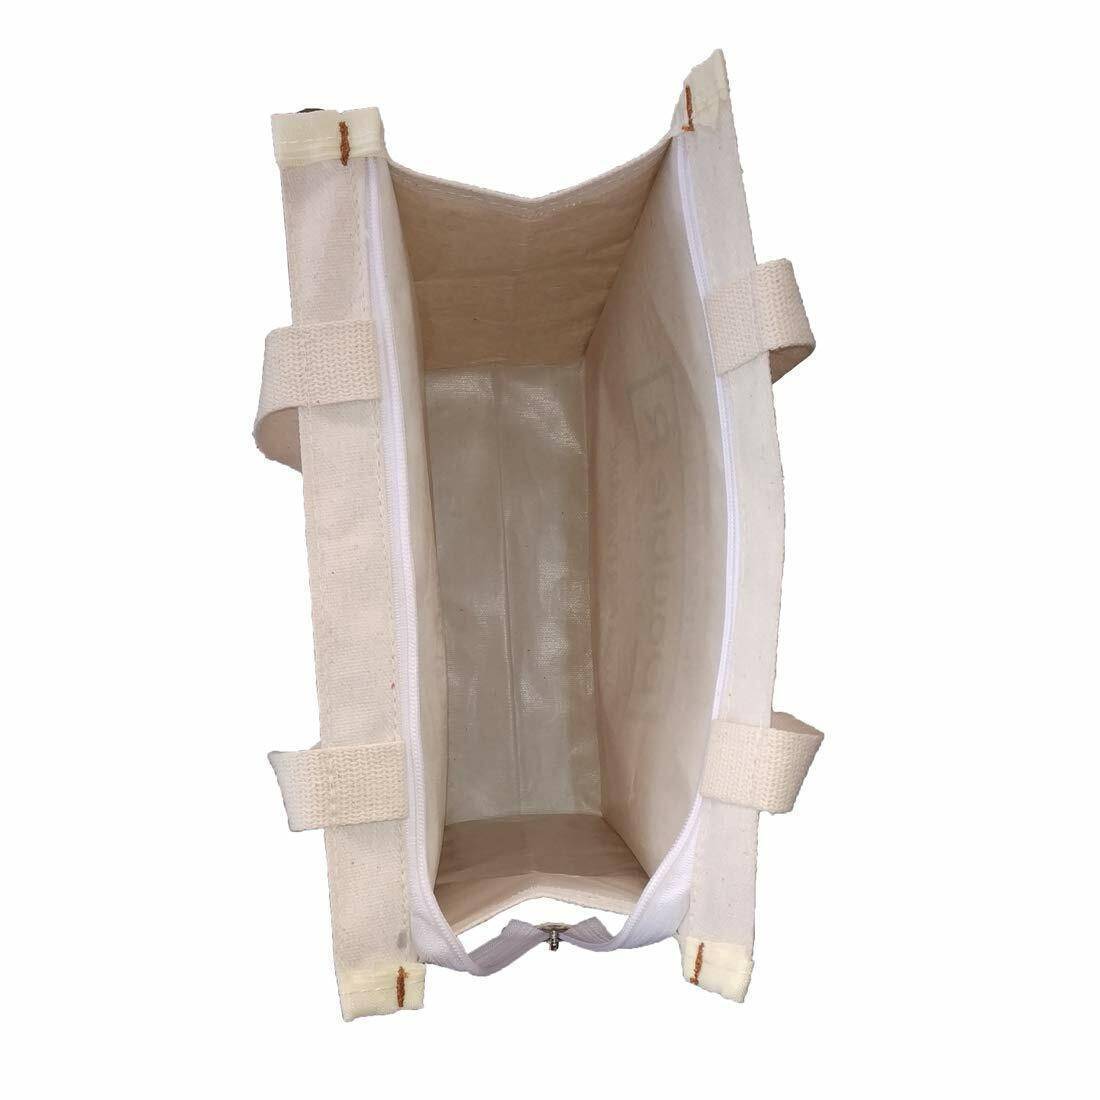 S/3 Multipurpose Bag Includes 3 Designs/Sizes